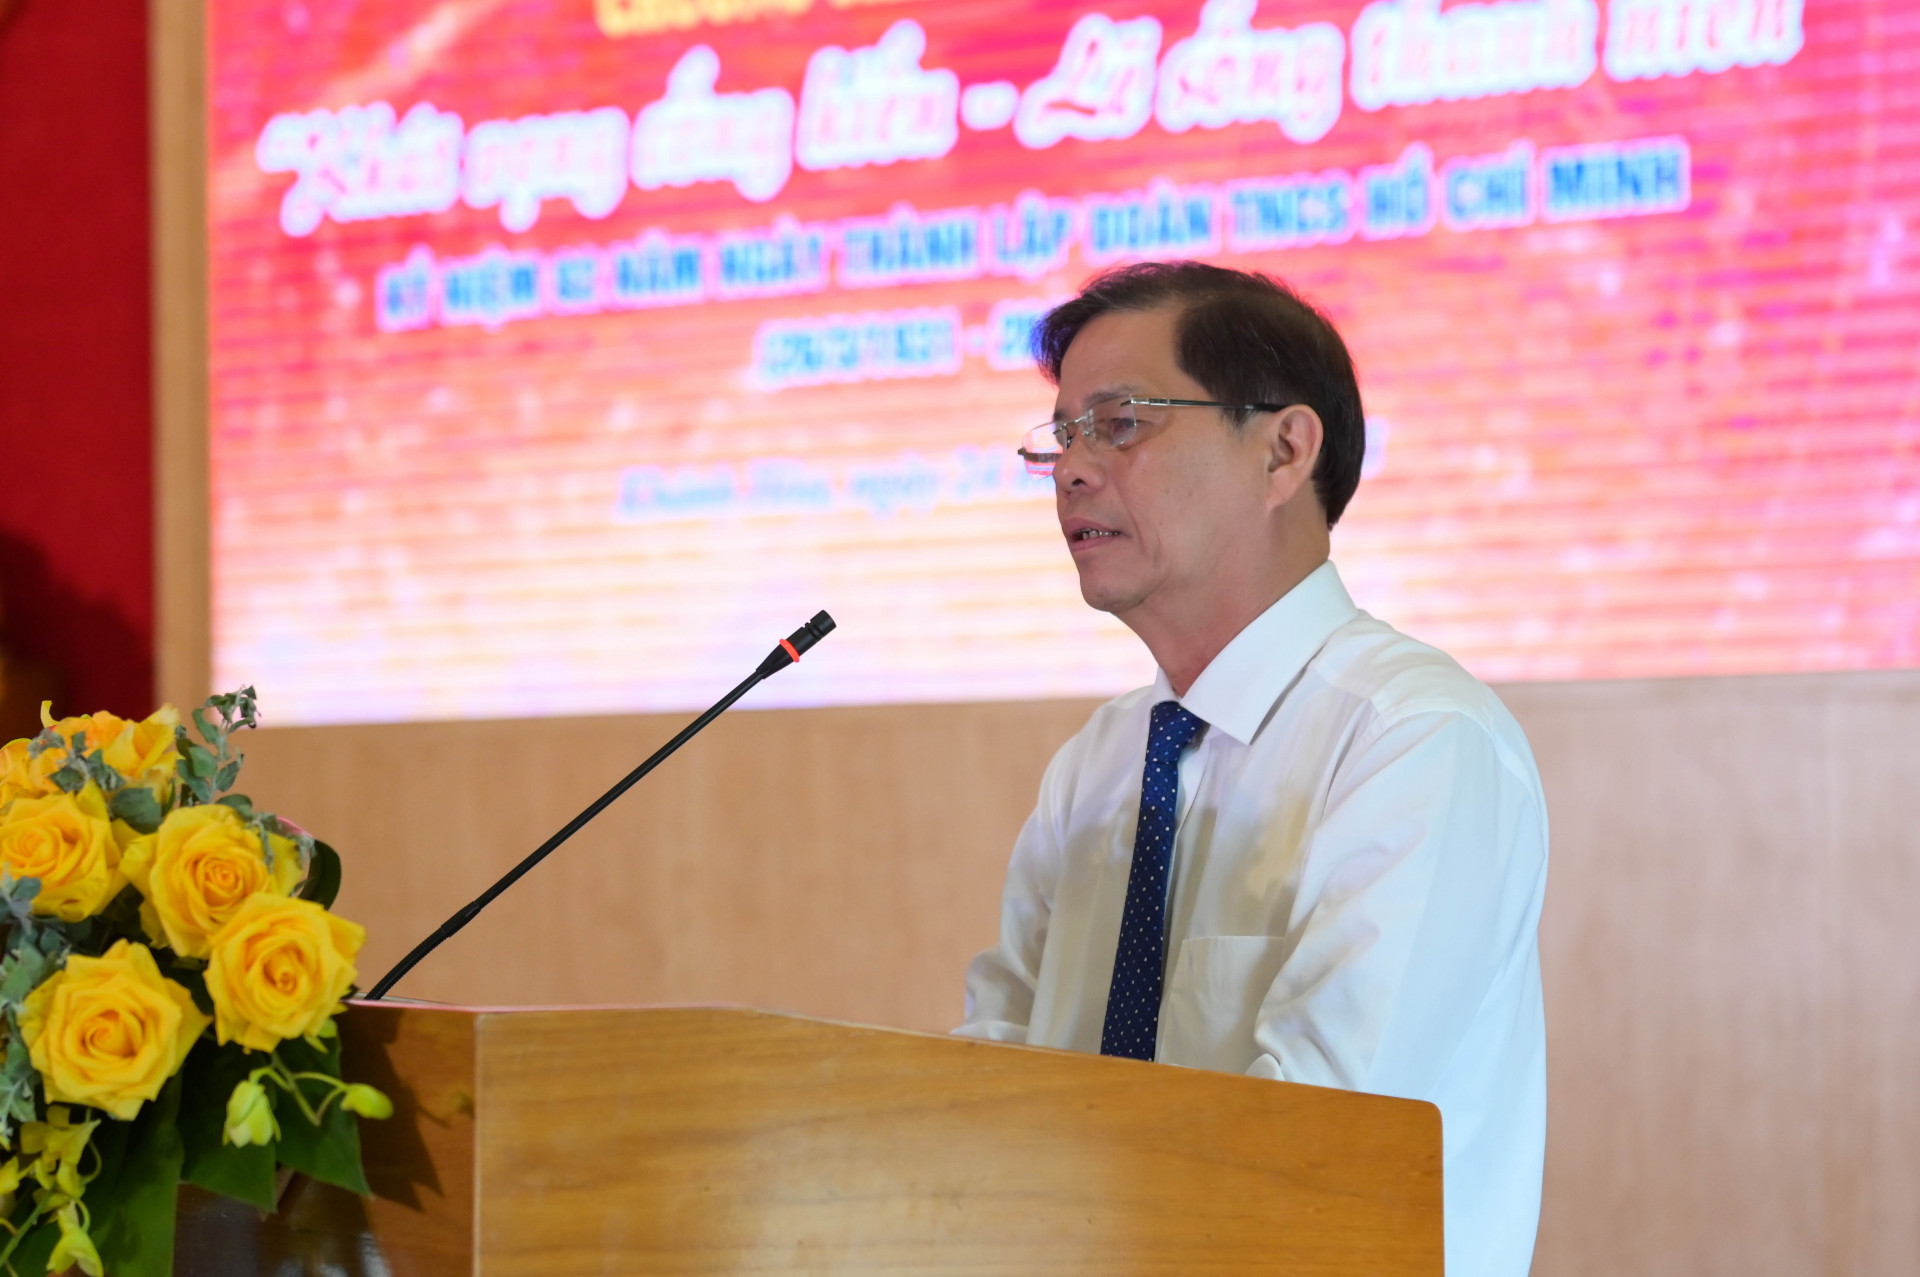 Đồng chí Nguyễn Tấn Tuân phát biểu chỉ đạo tại chương trình